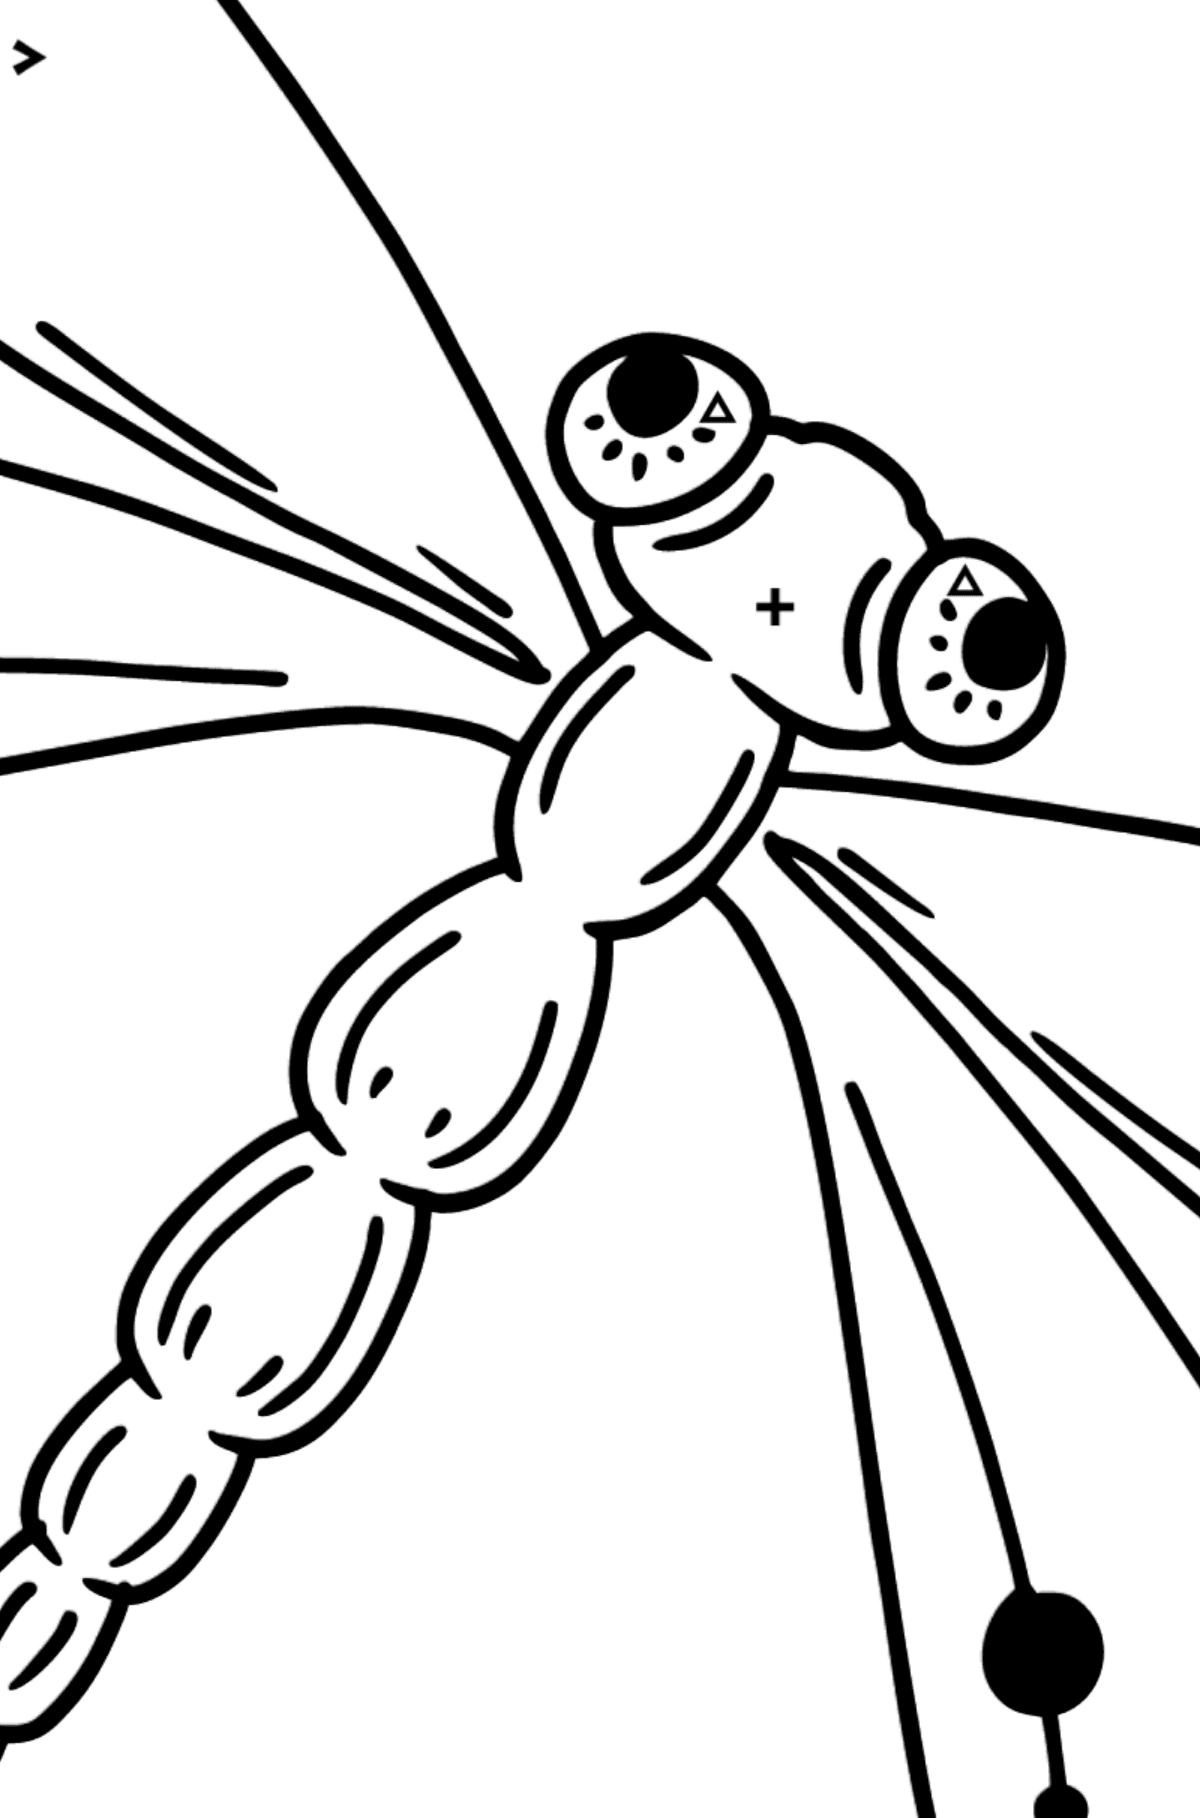 Omalovánka vážka - Omalovánka podle Symbolů pro děti